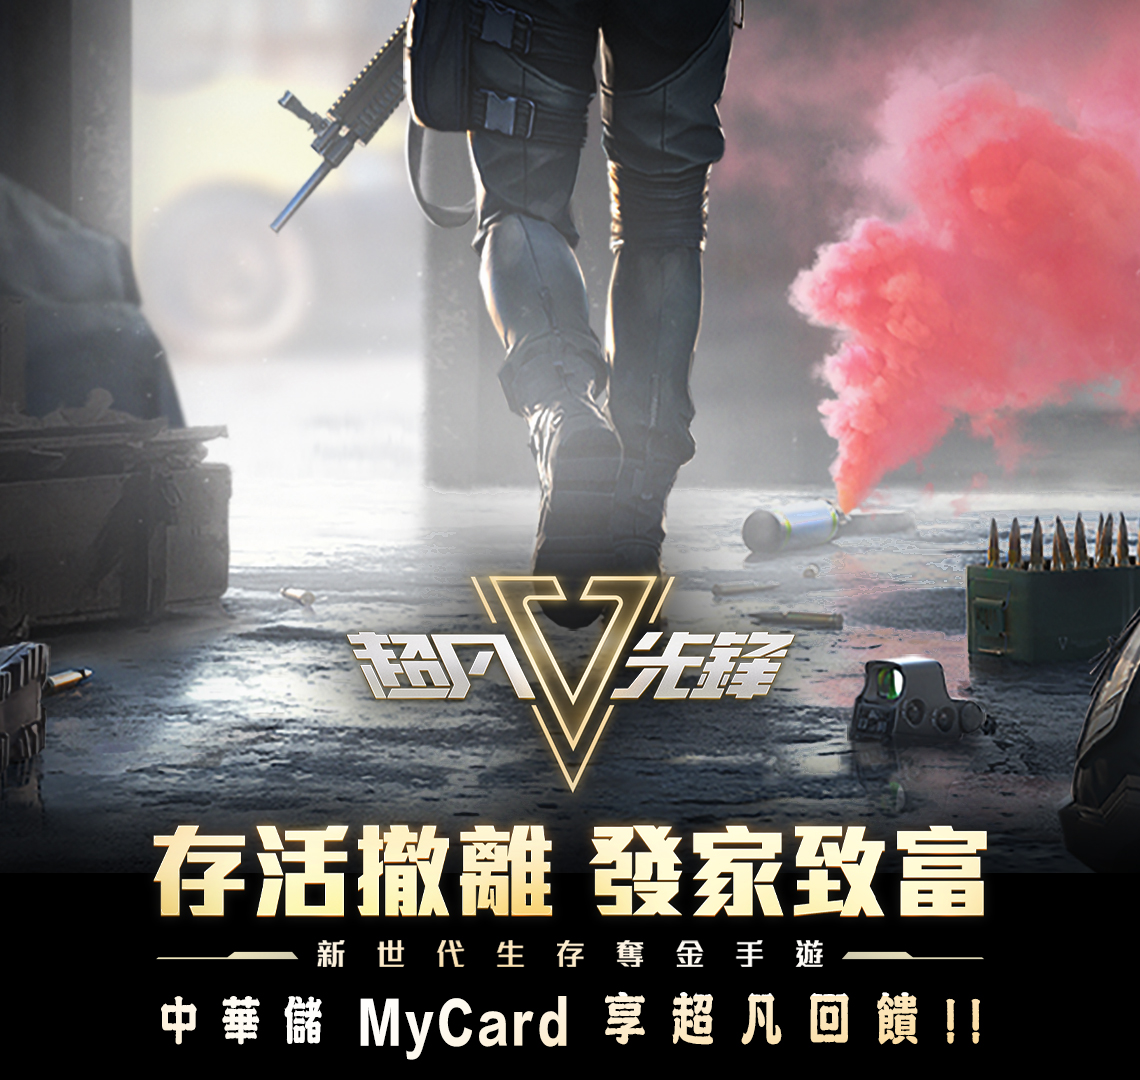   《超凡先鋒》MyCard儲值享超值好禮回饋 | 中華電信